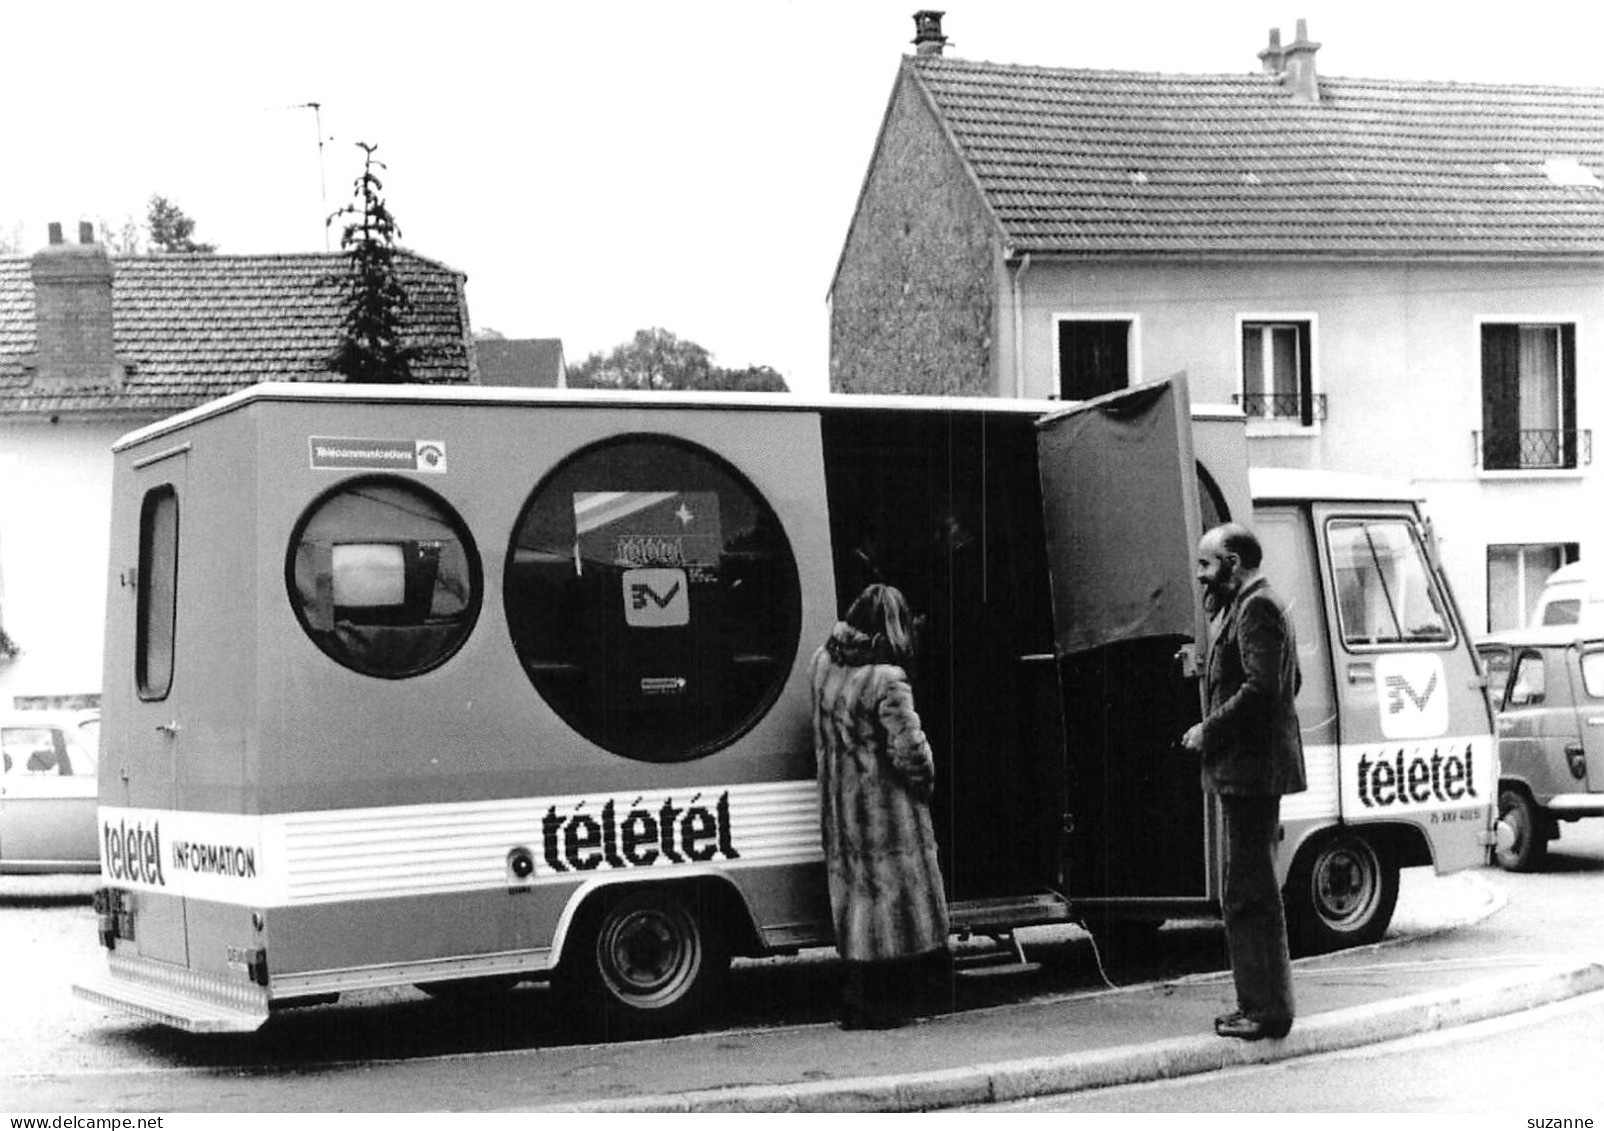 VÉLIZY - Camion Itinérant D'Information TELETEL 3V - Cliché 1981 - Velizy